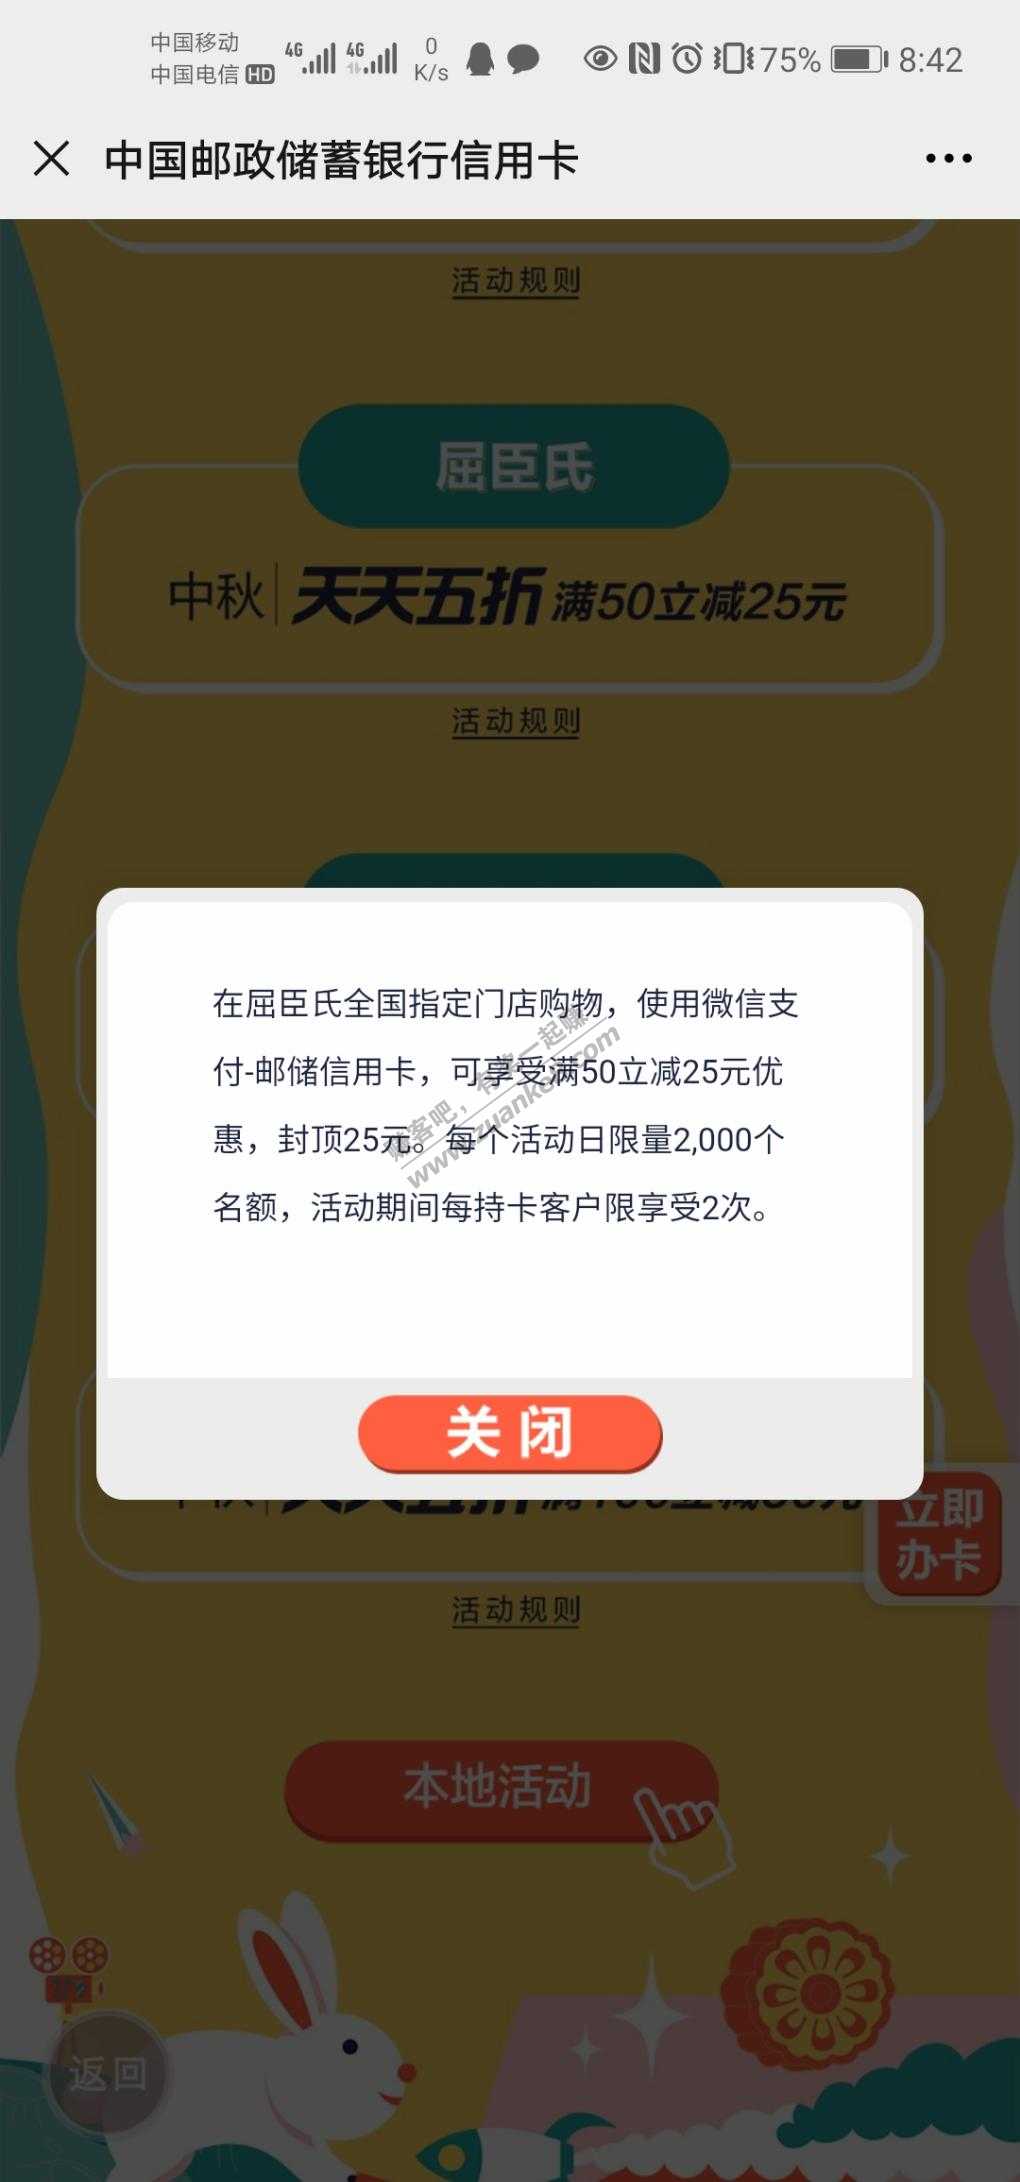 邮储信用卡919活动预告-惠小助(52huixz.com)